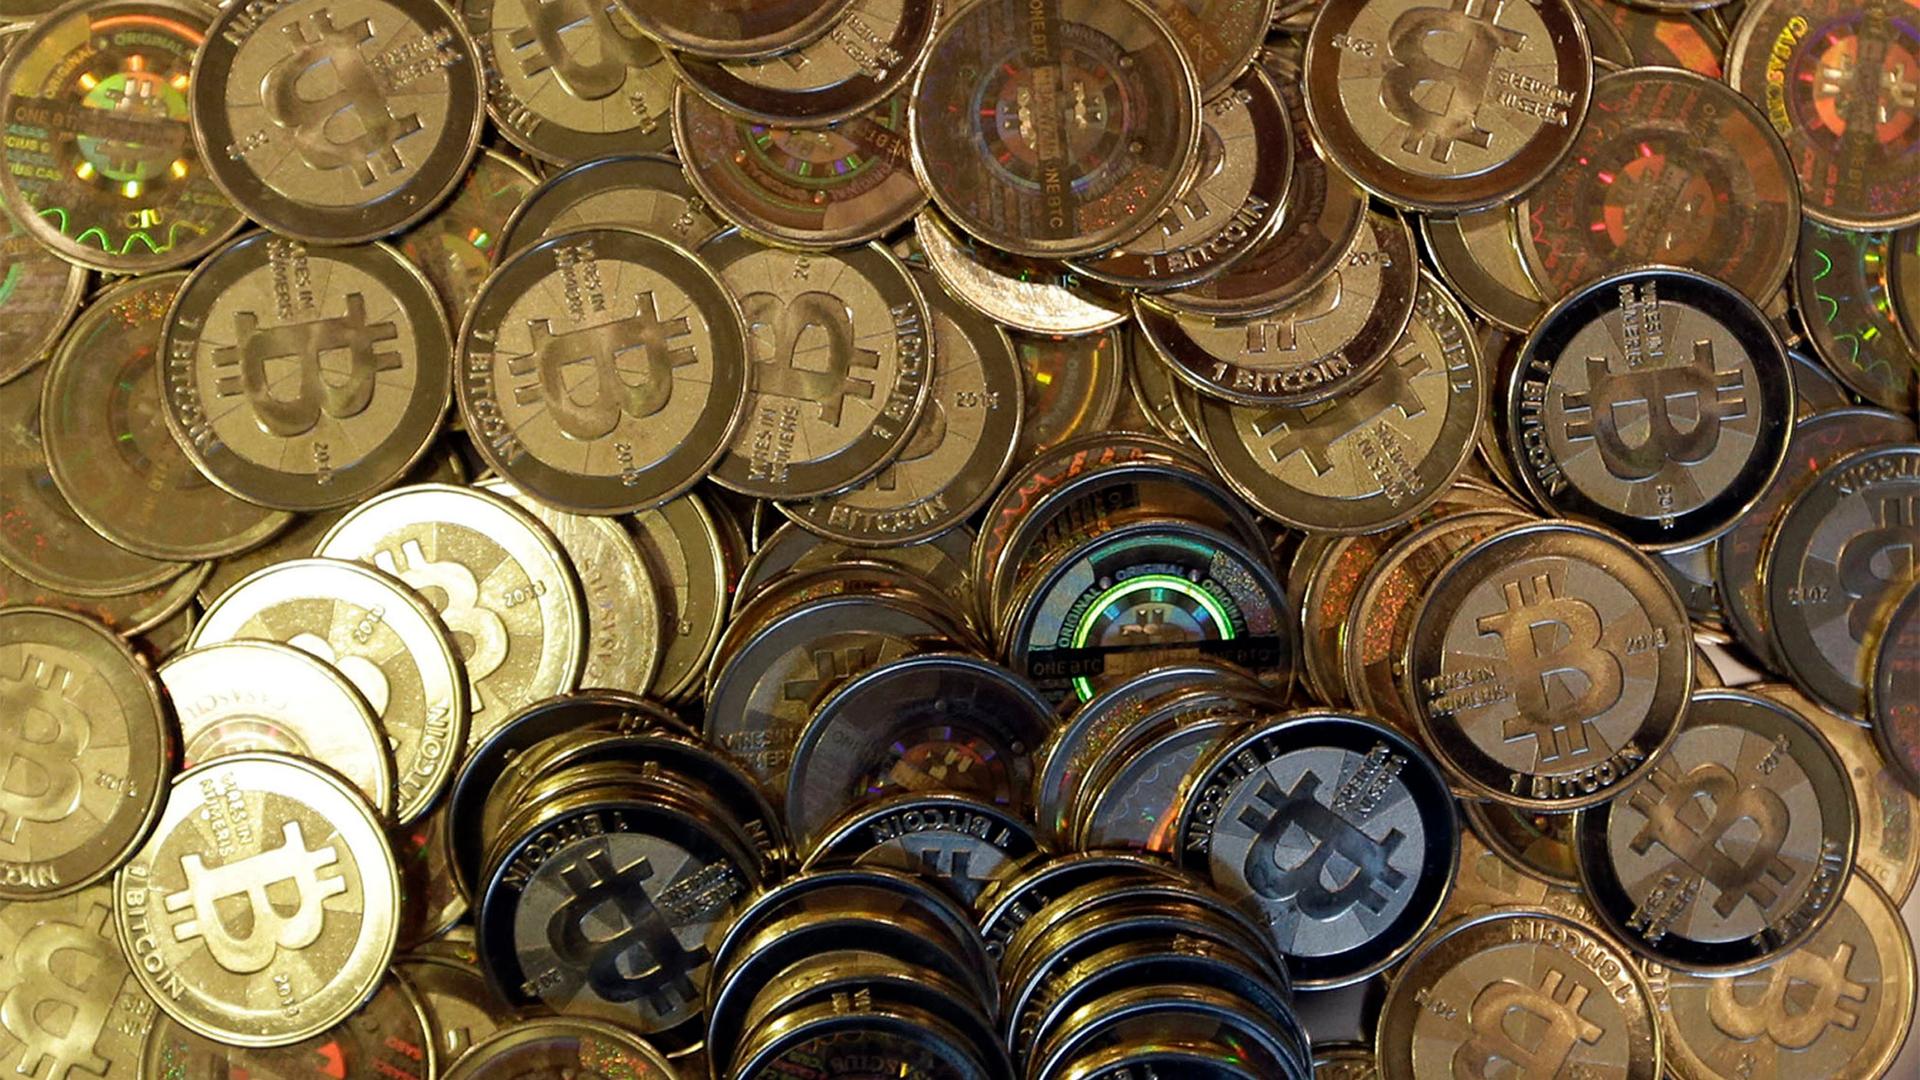 An array of bitcoins